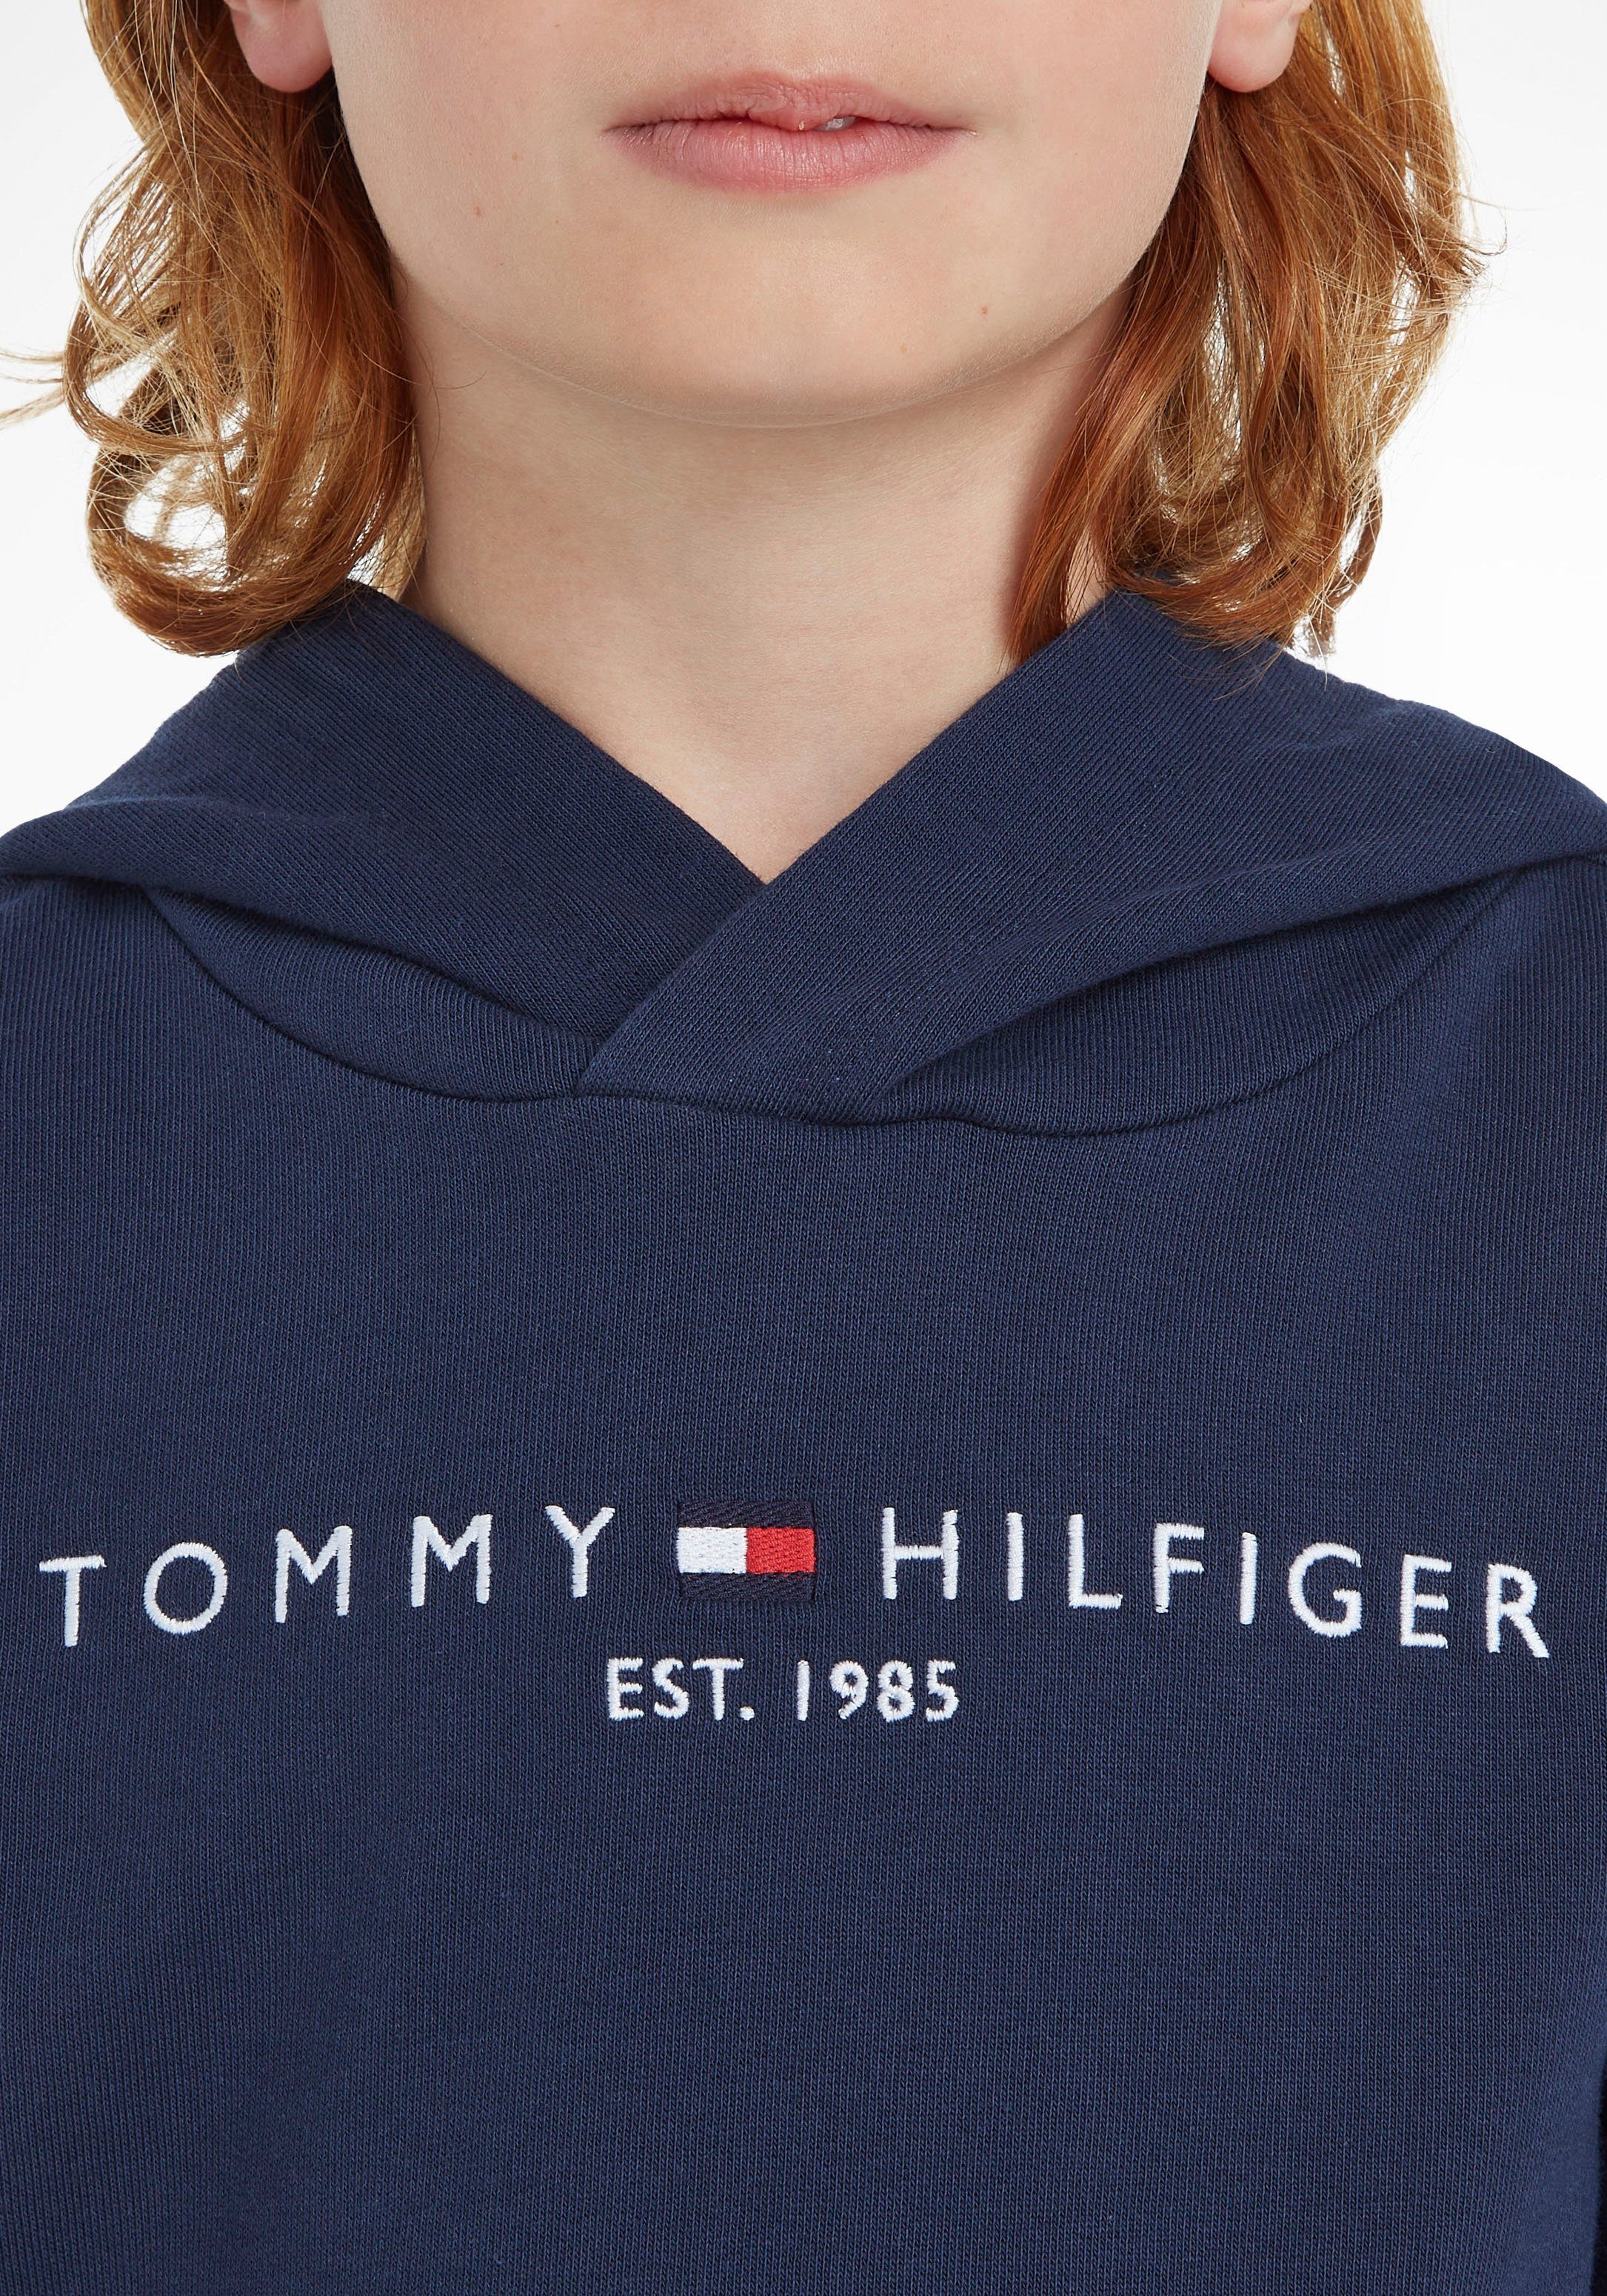 Jungen und MiniMe,für ESSENTIAL Junior Kapuzensweatshirt Mädchen Hilfiger Tommy Kinder HOODIE Kids